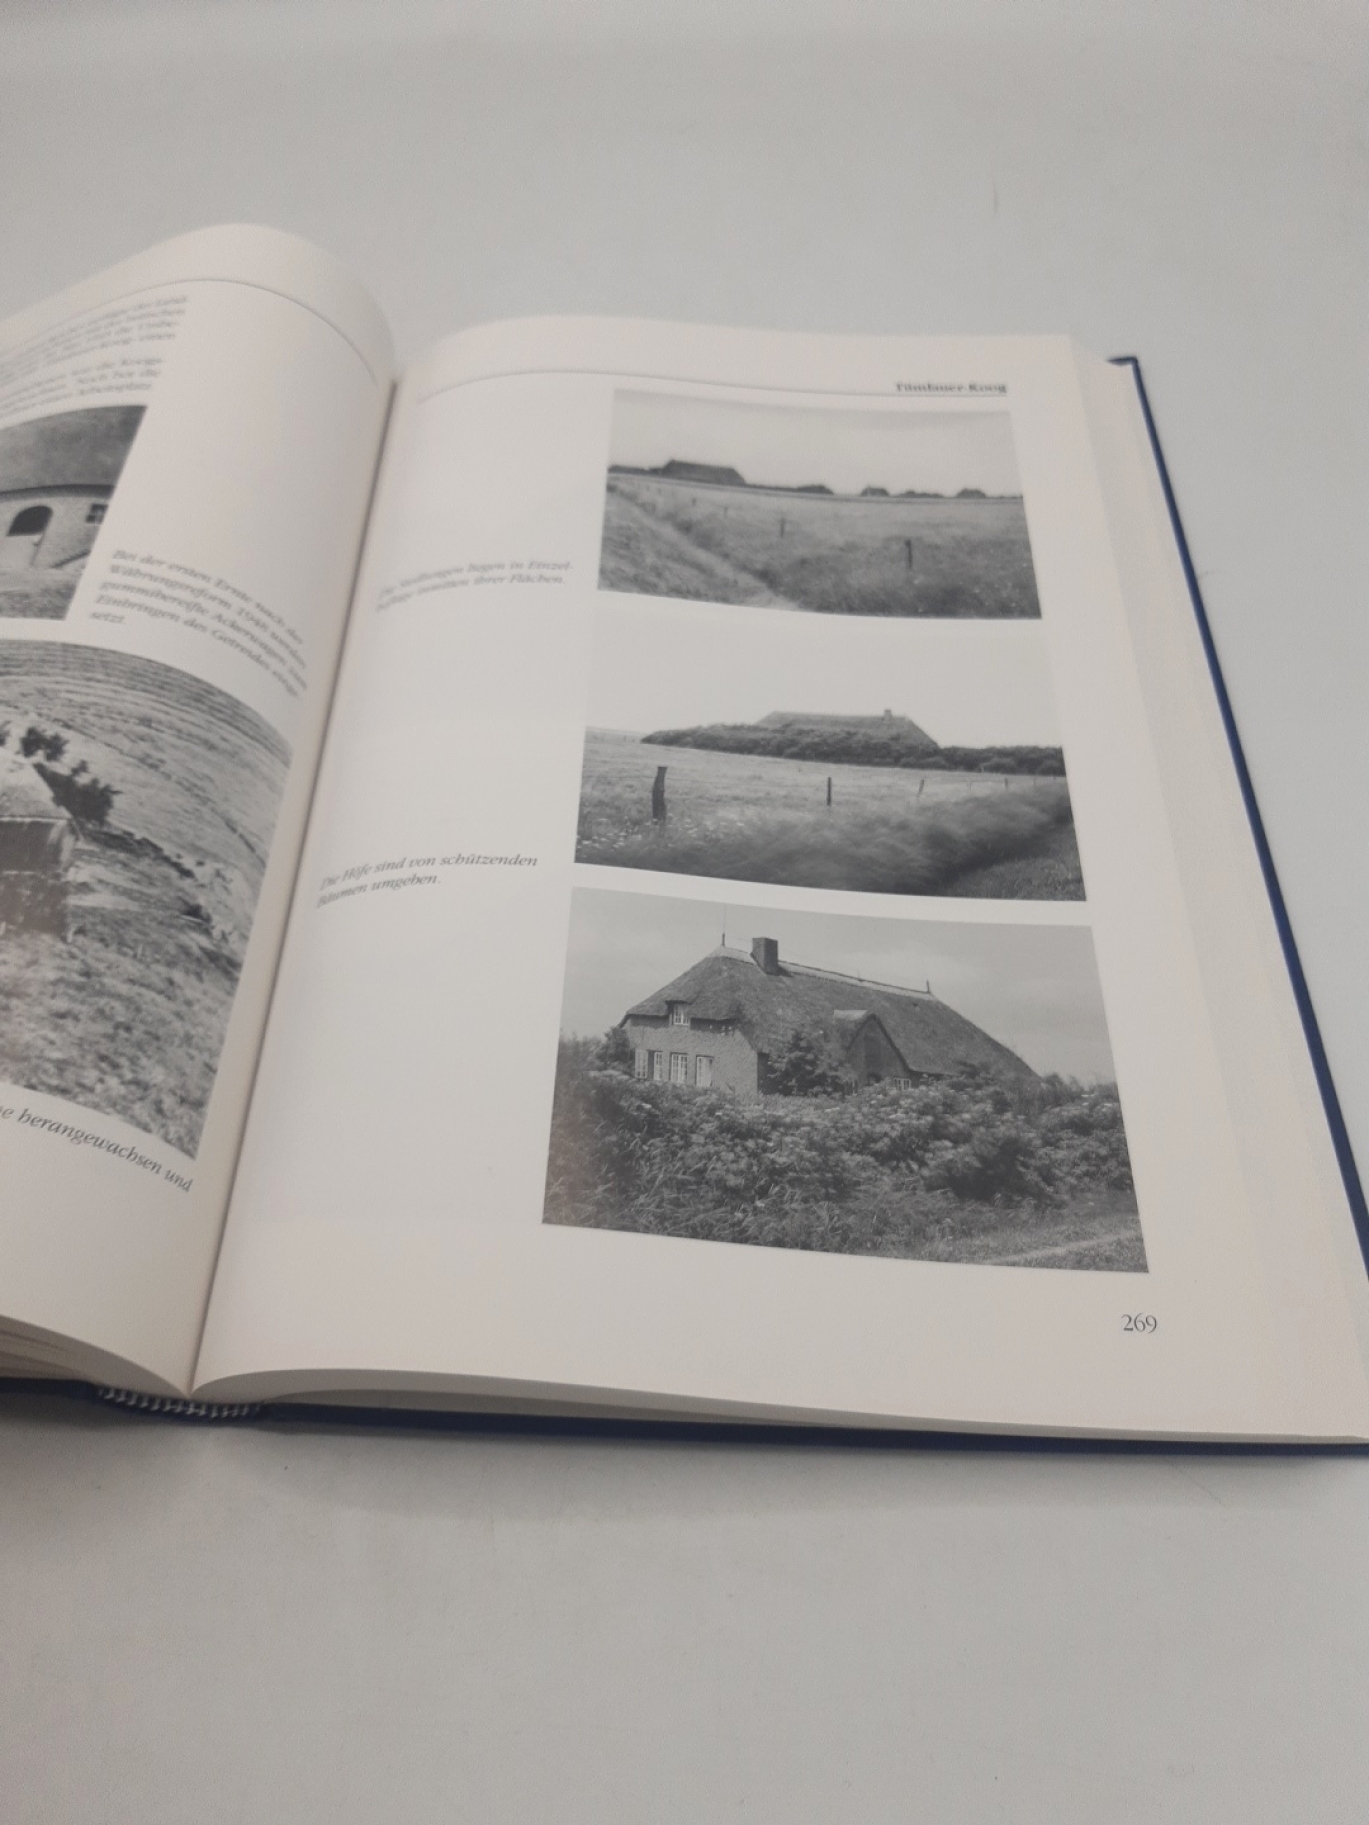 Schübeler, Horst: Landwirtschaft in Schleswig-Holstein. Bilddokumentation zur Agrargeschichte. Band III (3): Köge des 20. Jahrhunderts